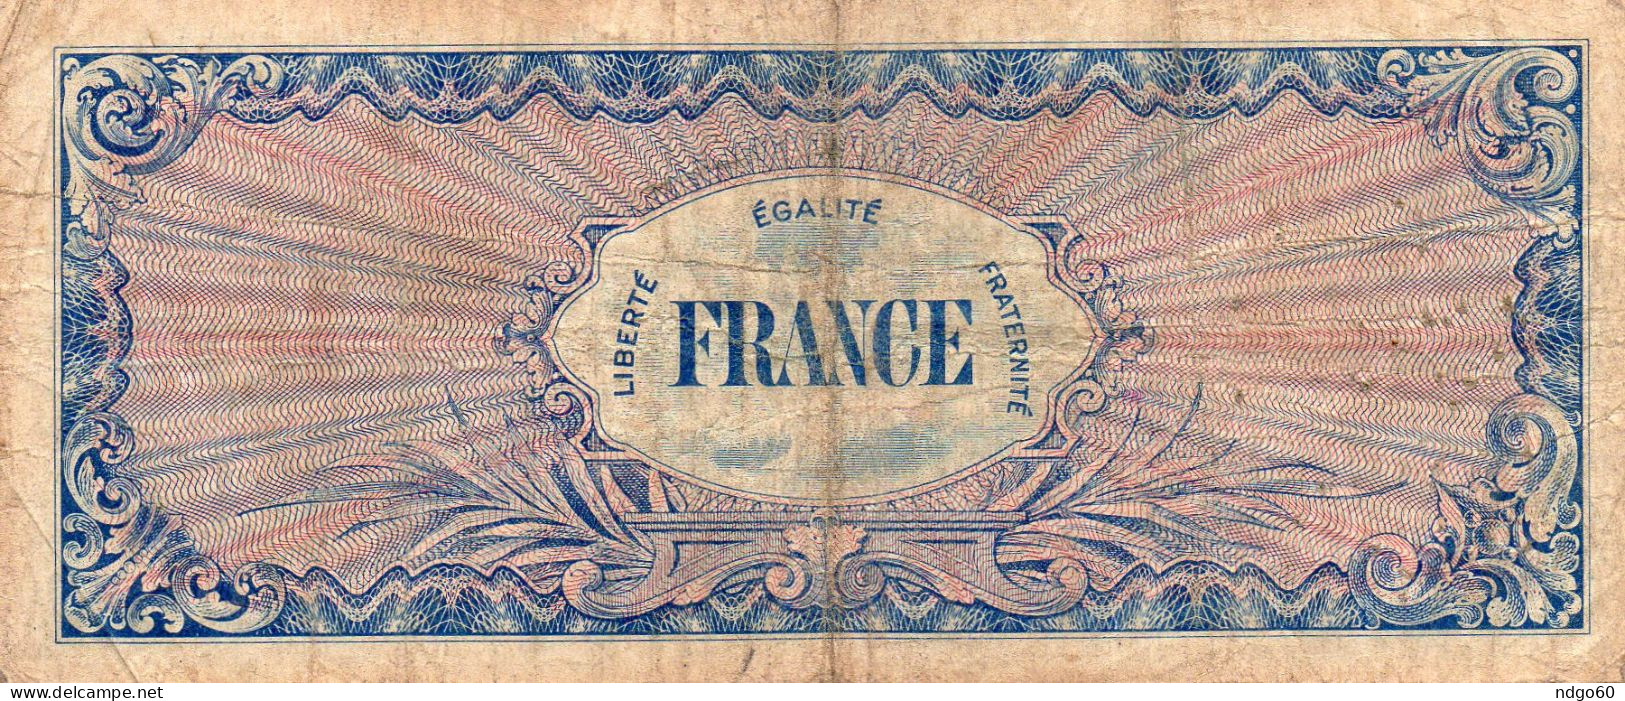 Billet 100  Fr Du Trésor " Verso France " - 1945 Verso Francia